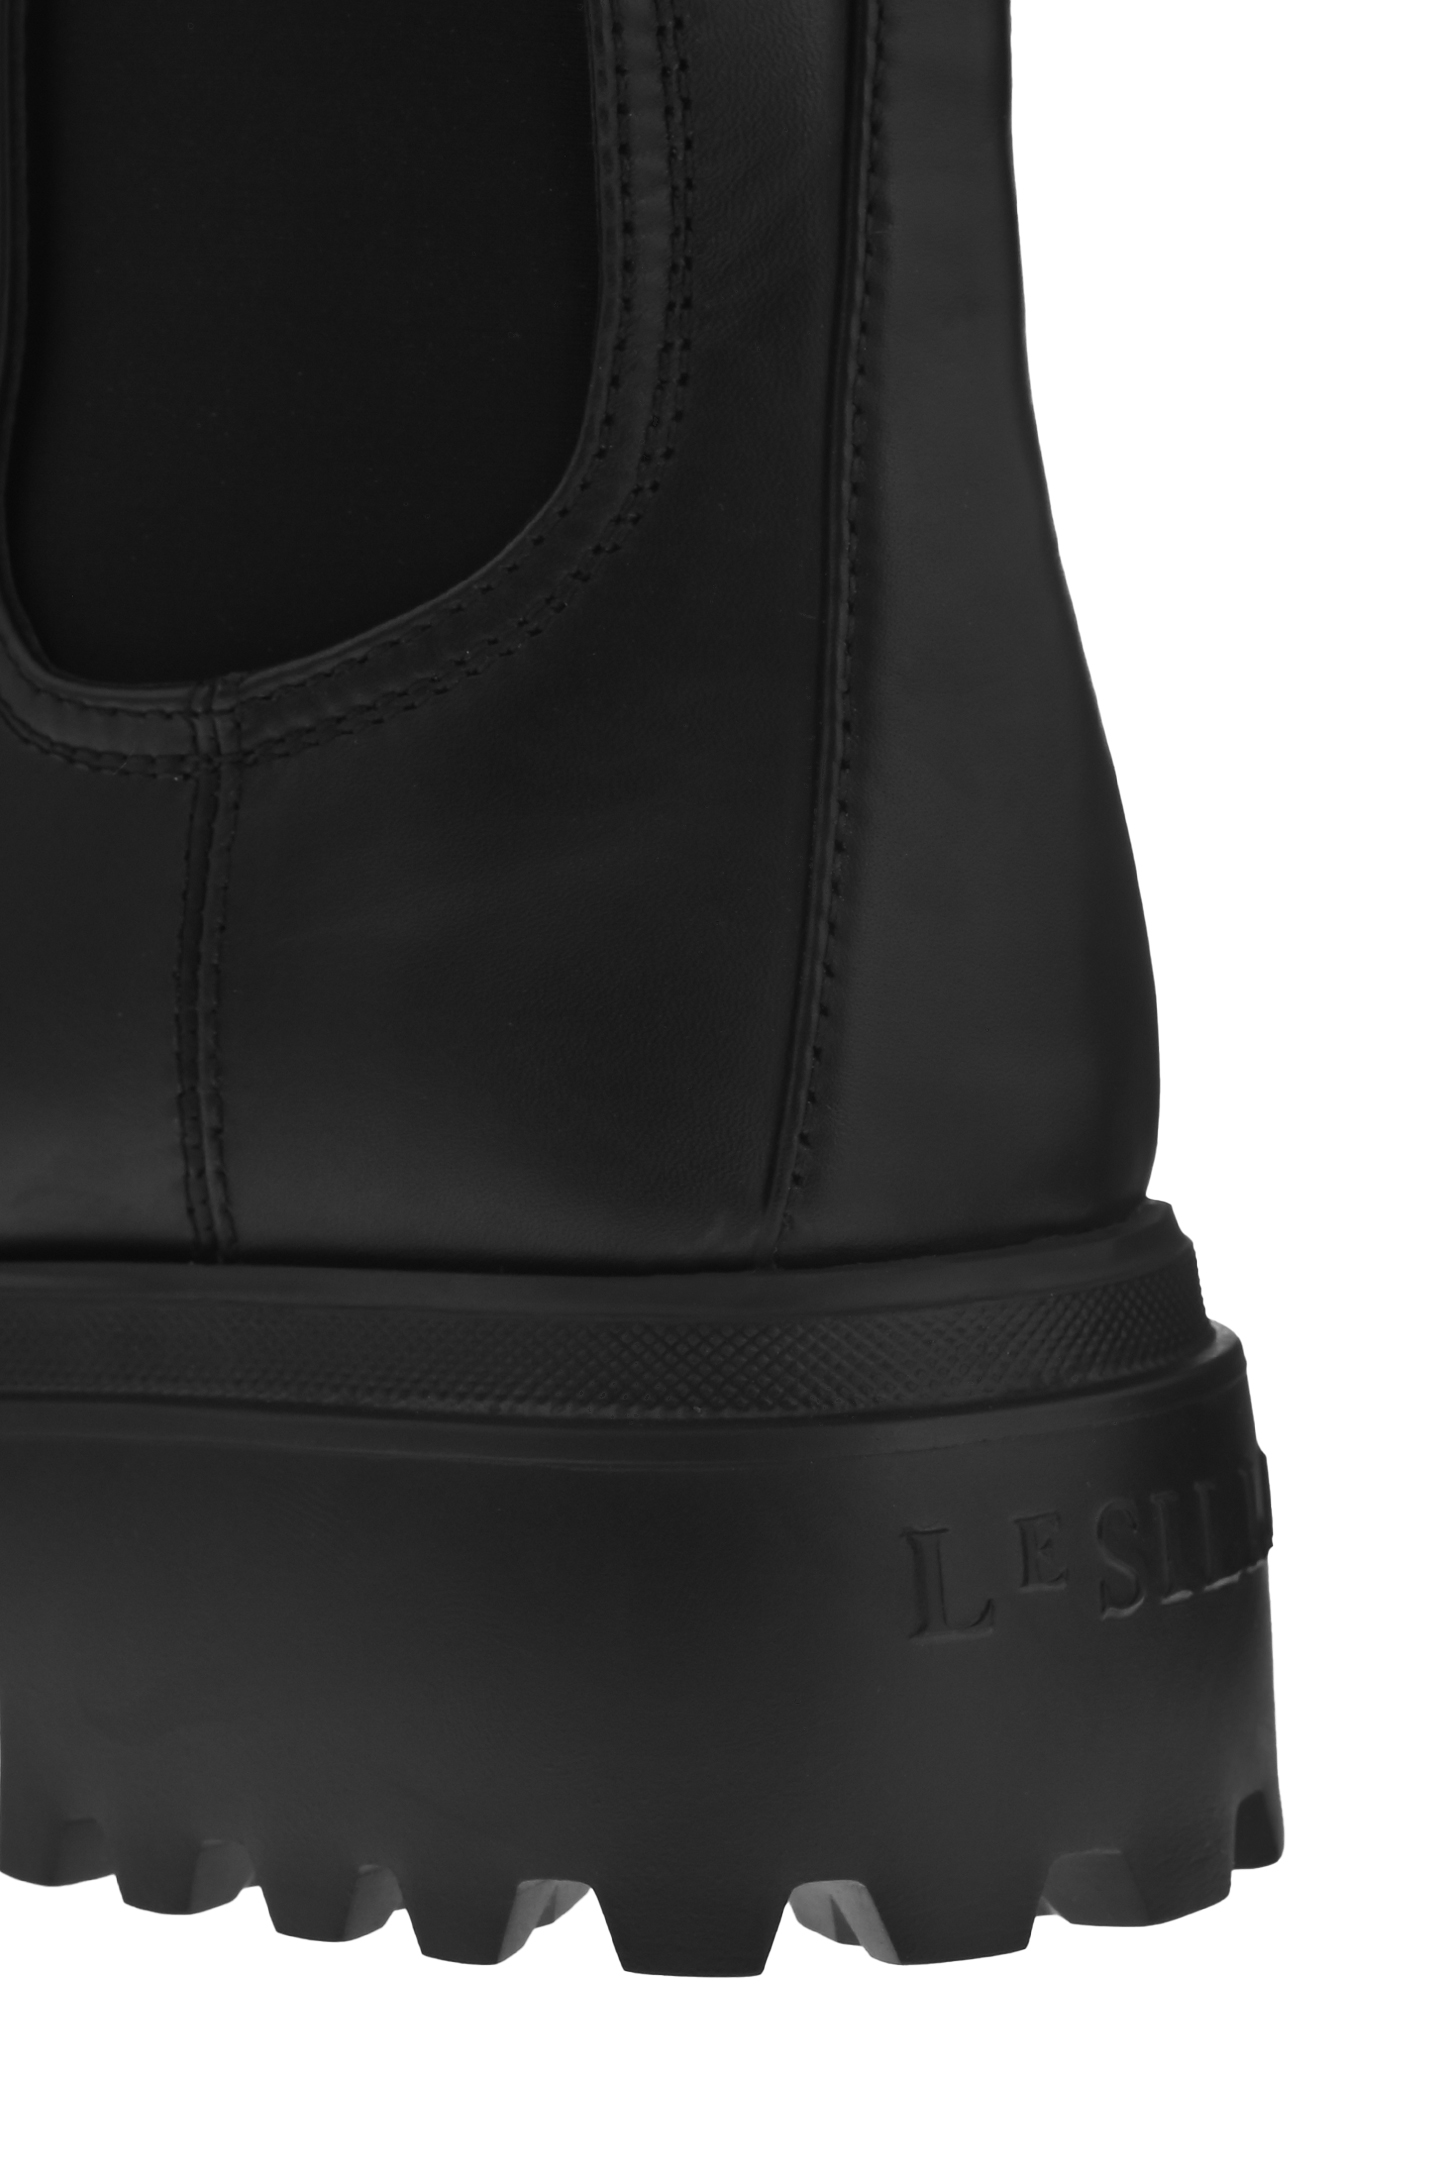 Ботинки LE SILLA 6493R020M1PPCHI001, цвет: Черный, Женский